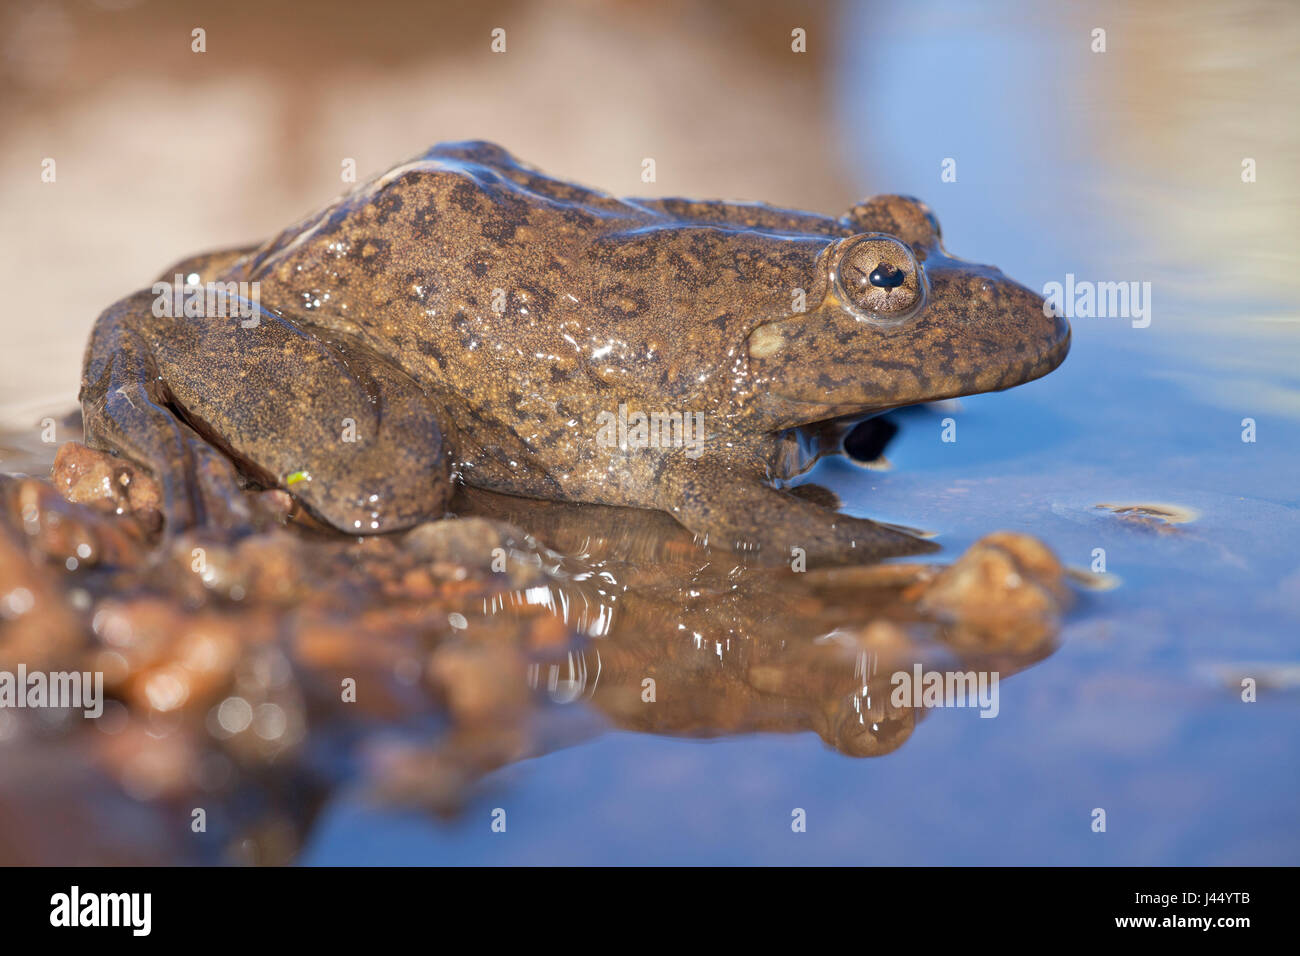 Foto eines Maluti Fluss Frosch, hat es eine Padiglione in seinem Auge, das schützt die Augen vor UV-Strahlung und ist eine Adaption für das Leben auf großen Höhen Stockfoto